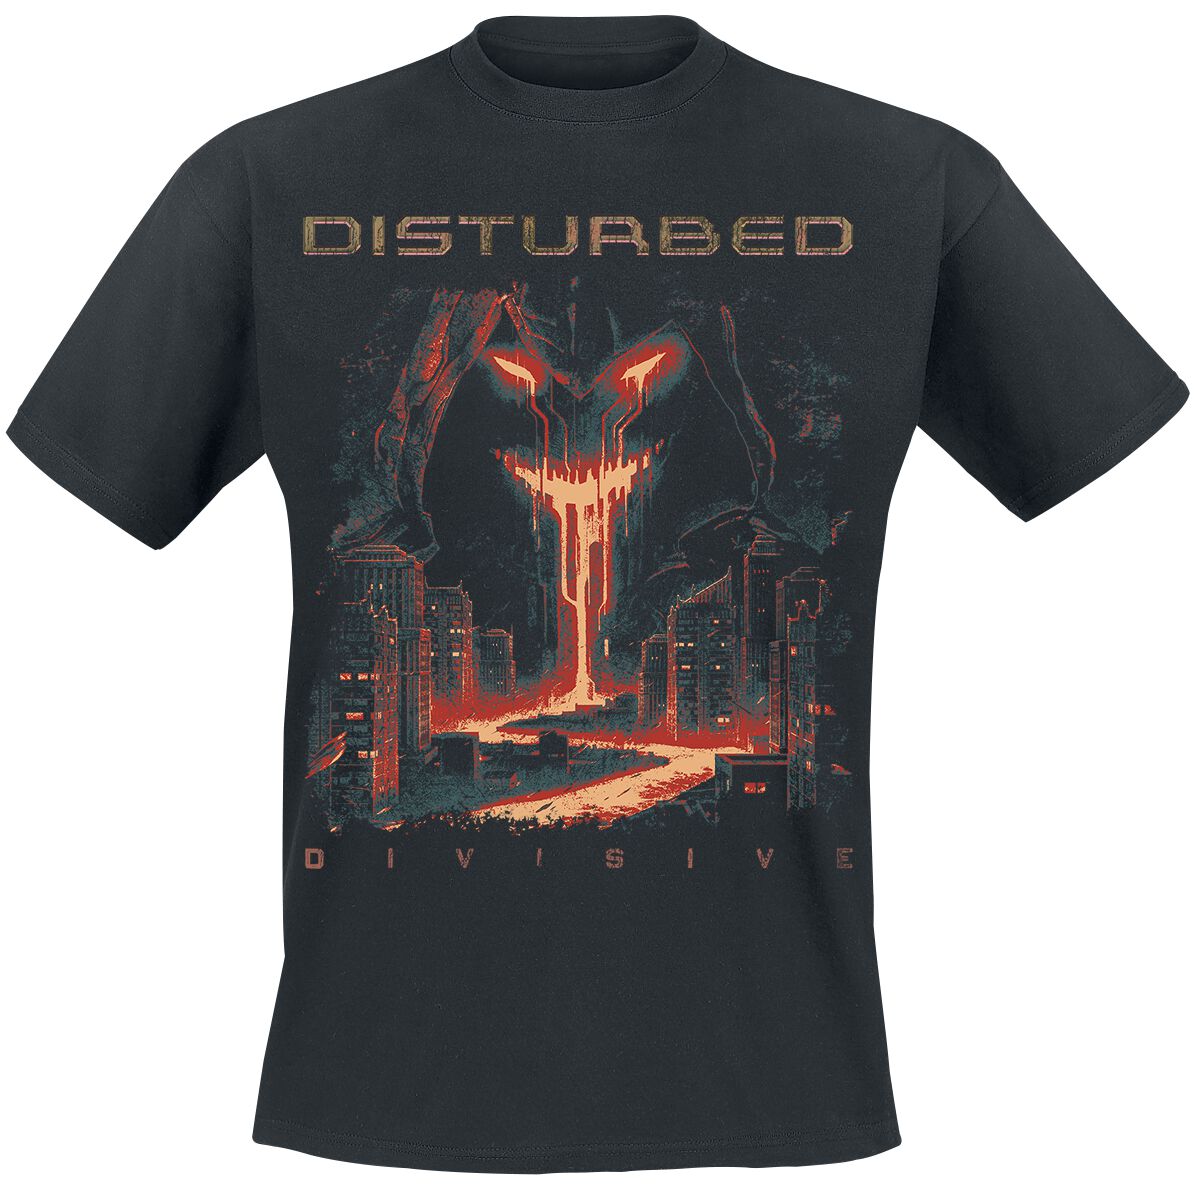 Disturbed T-Shirt - Divisive - S bis 3XL - für Männer - Größe XXL - schwarz  - Lizenziertes Merchandise!